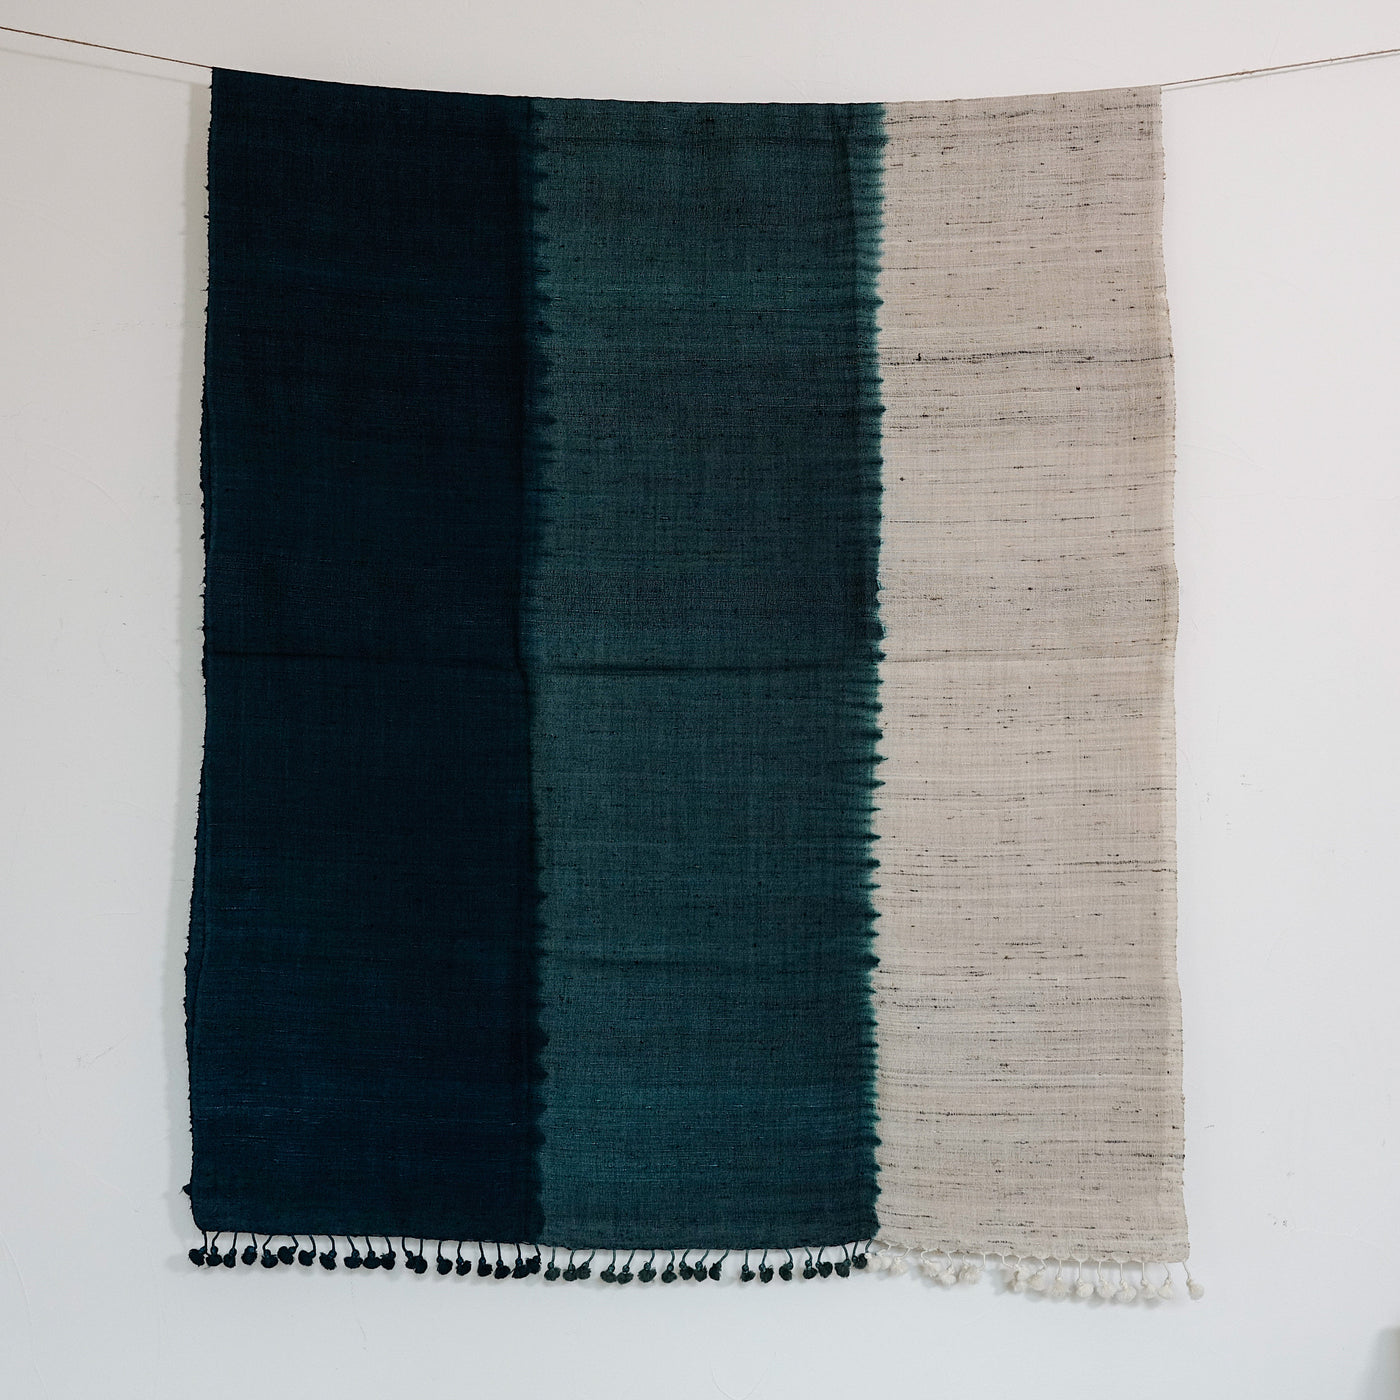 Samatra - Tie & Dye woolen wool and wild silk